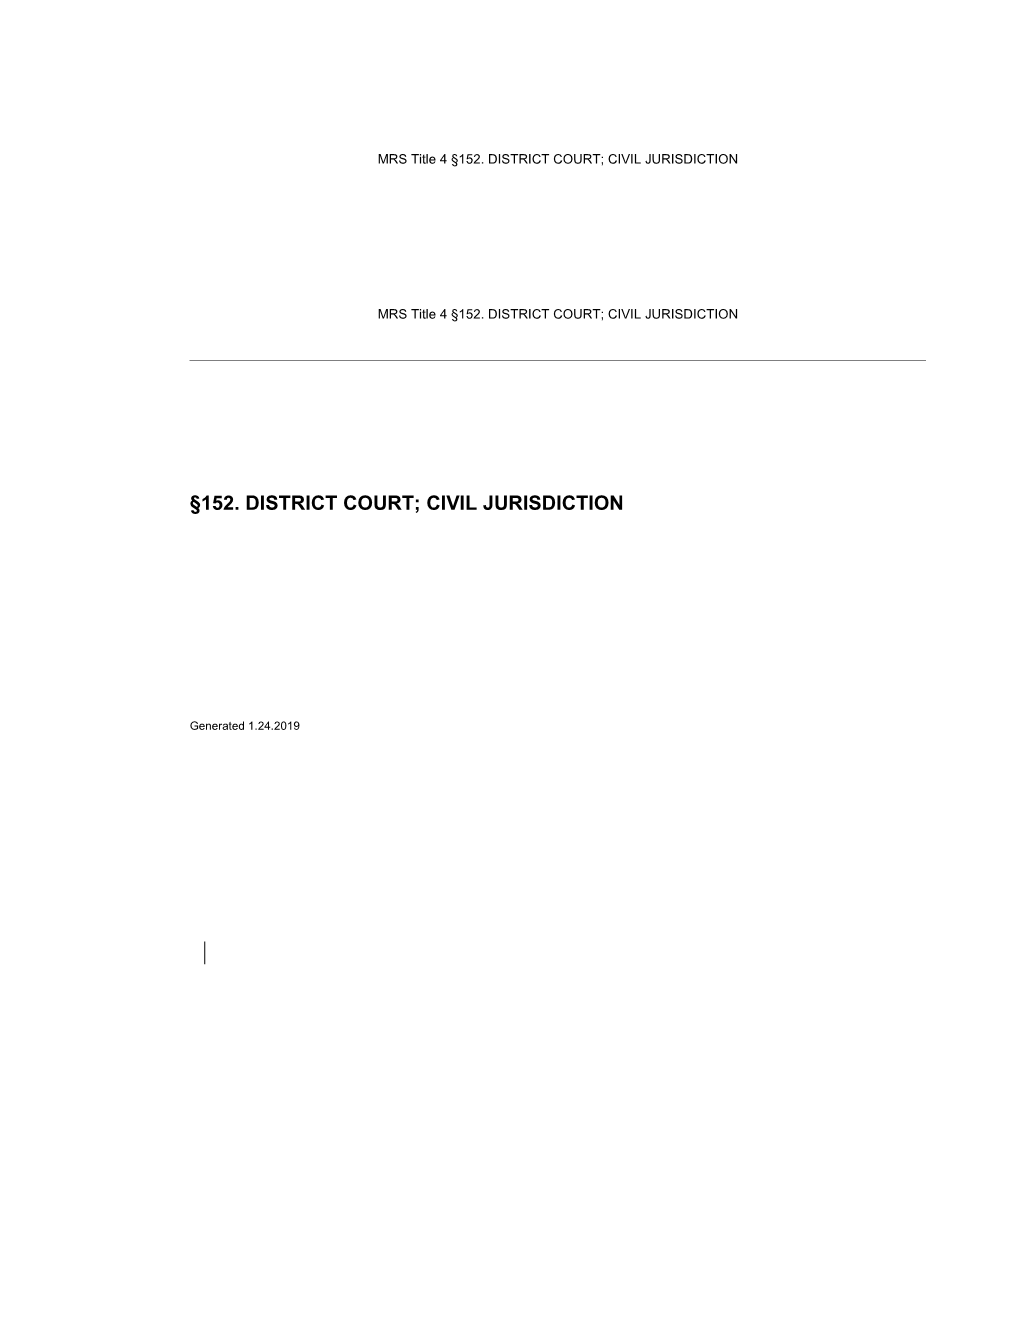 MRS Title 4 152. DISTRICT COURT; CIVIL JURISDICTION